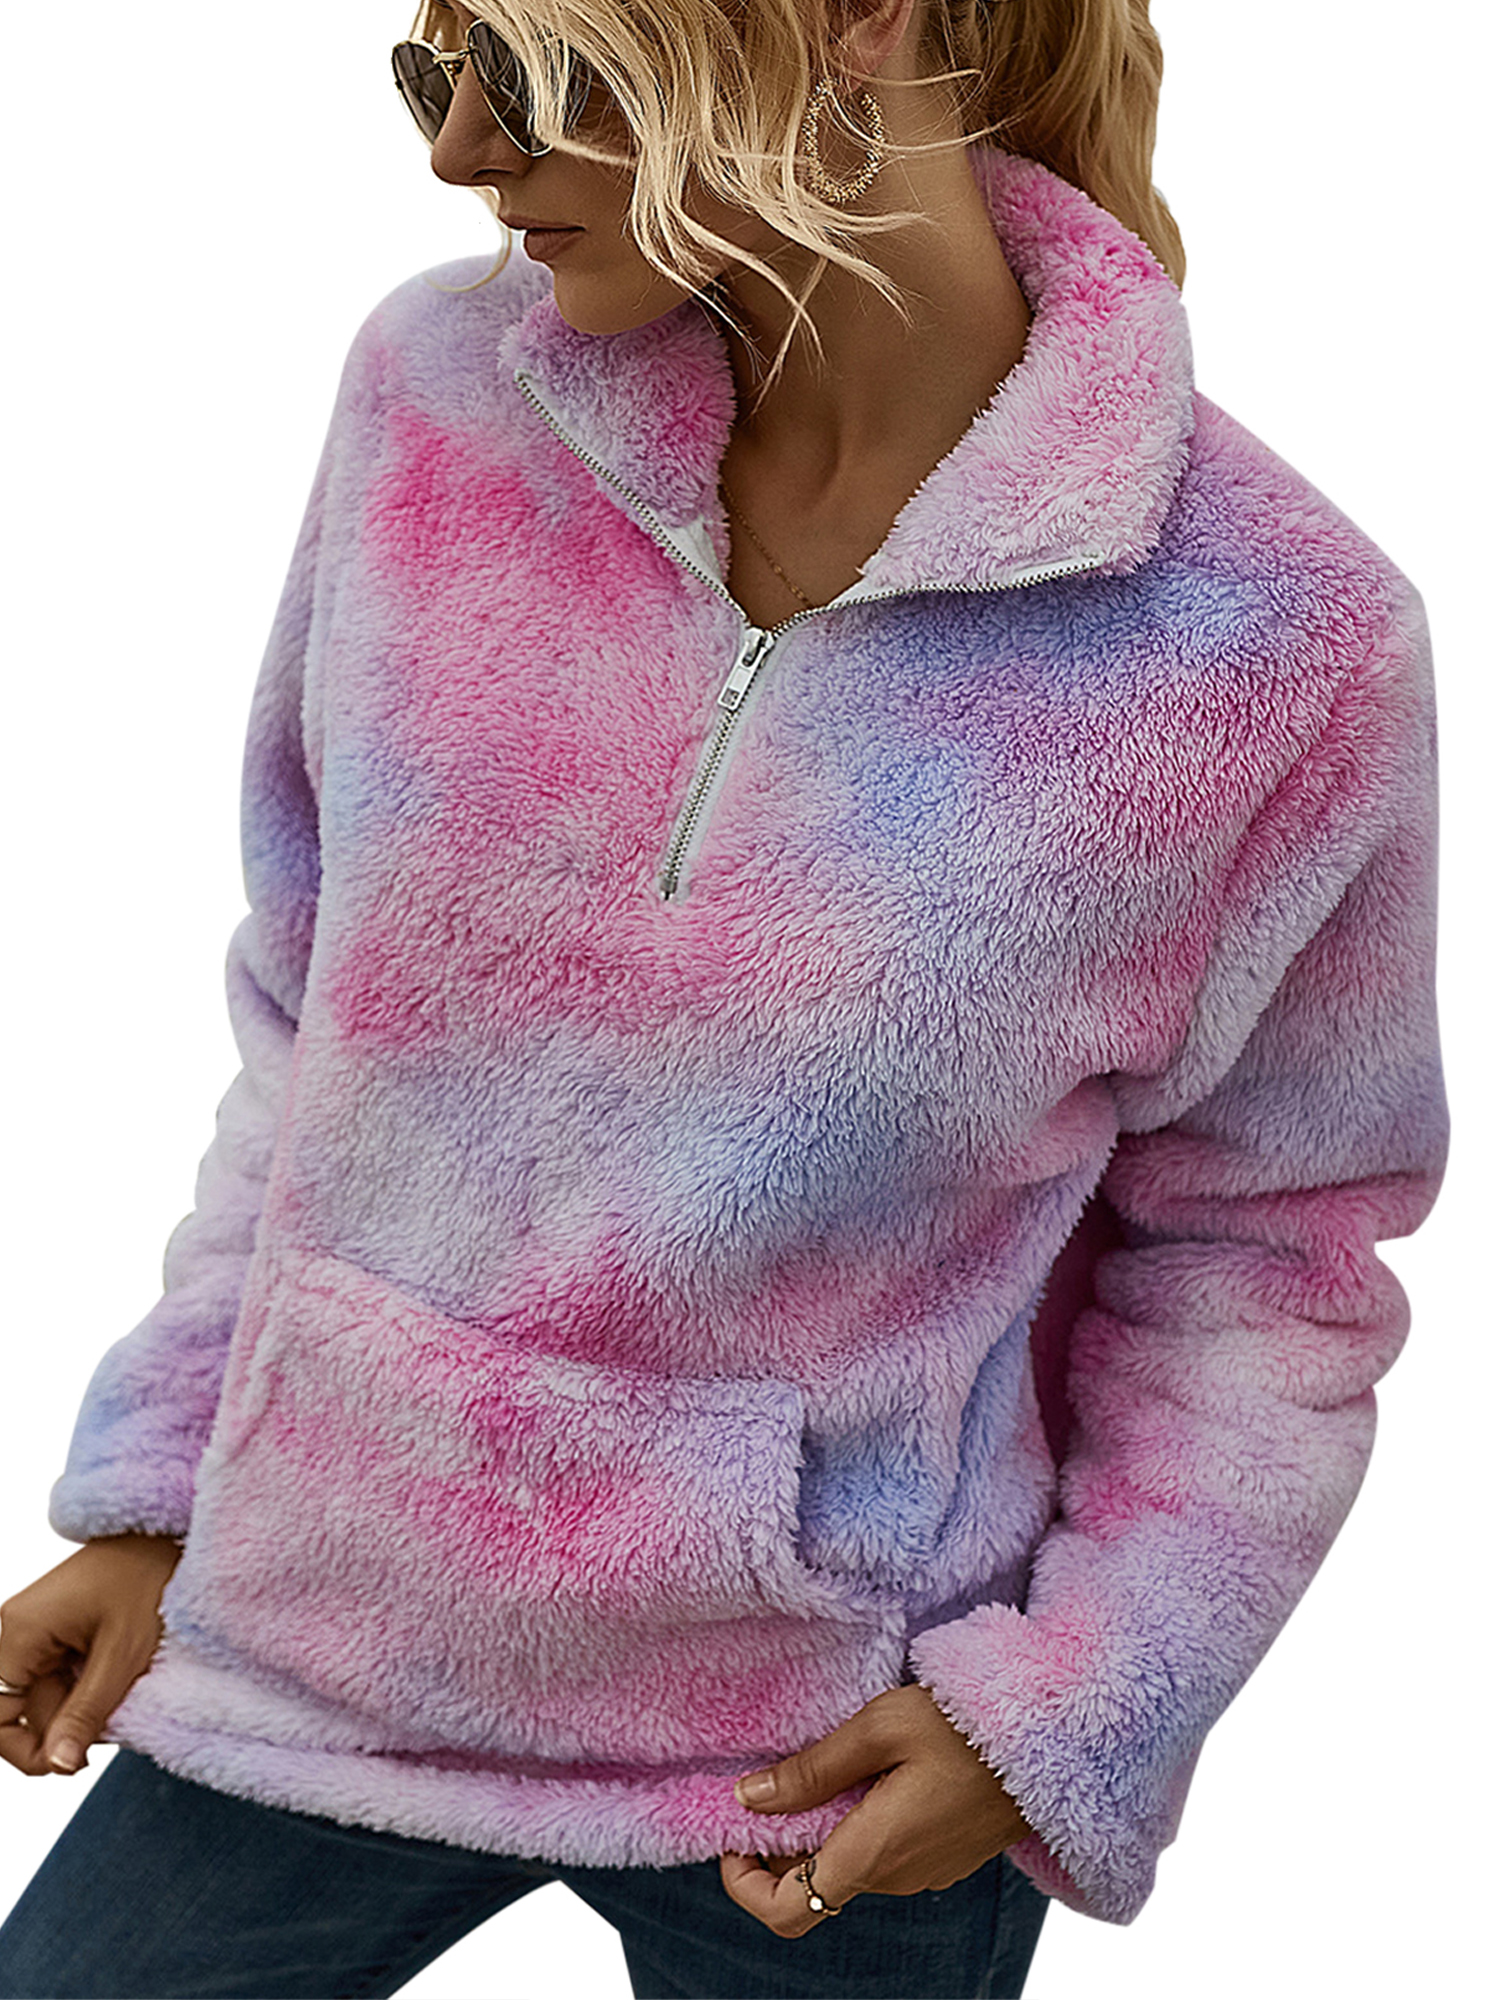 JINF Women Long Sleeve Zip-Up Hoodie Jacket Print Stitching Color Sweatshirt Coat,Women'S Quarter Zip Tops 